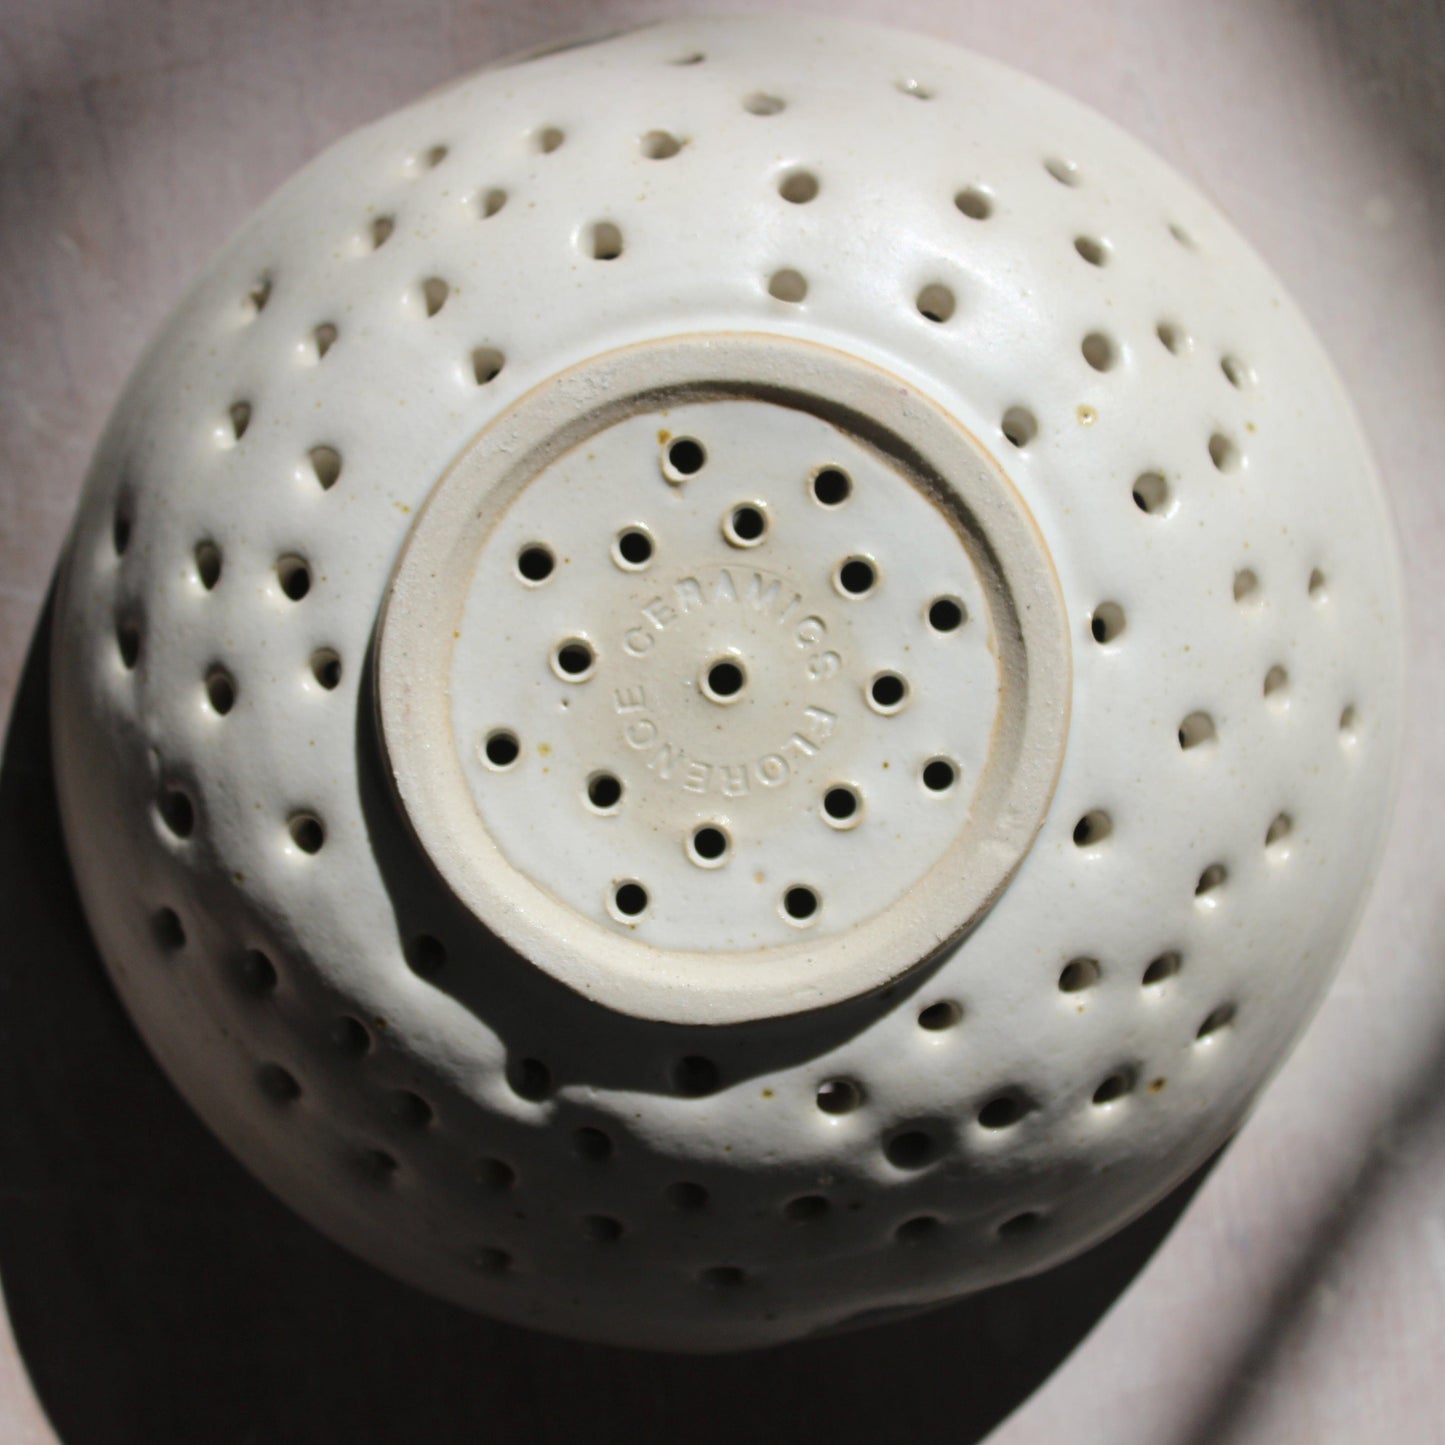 Florence Ceramics Ceramic & Pottery Glazes Flecked Stoneware Colander / Berry Bowl